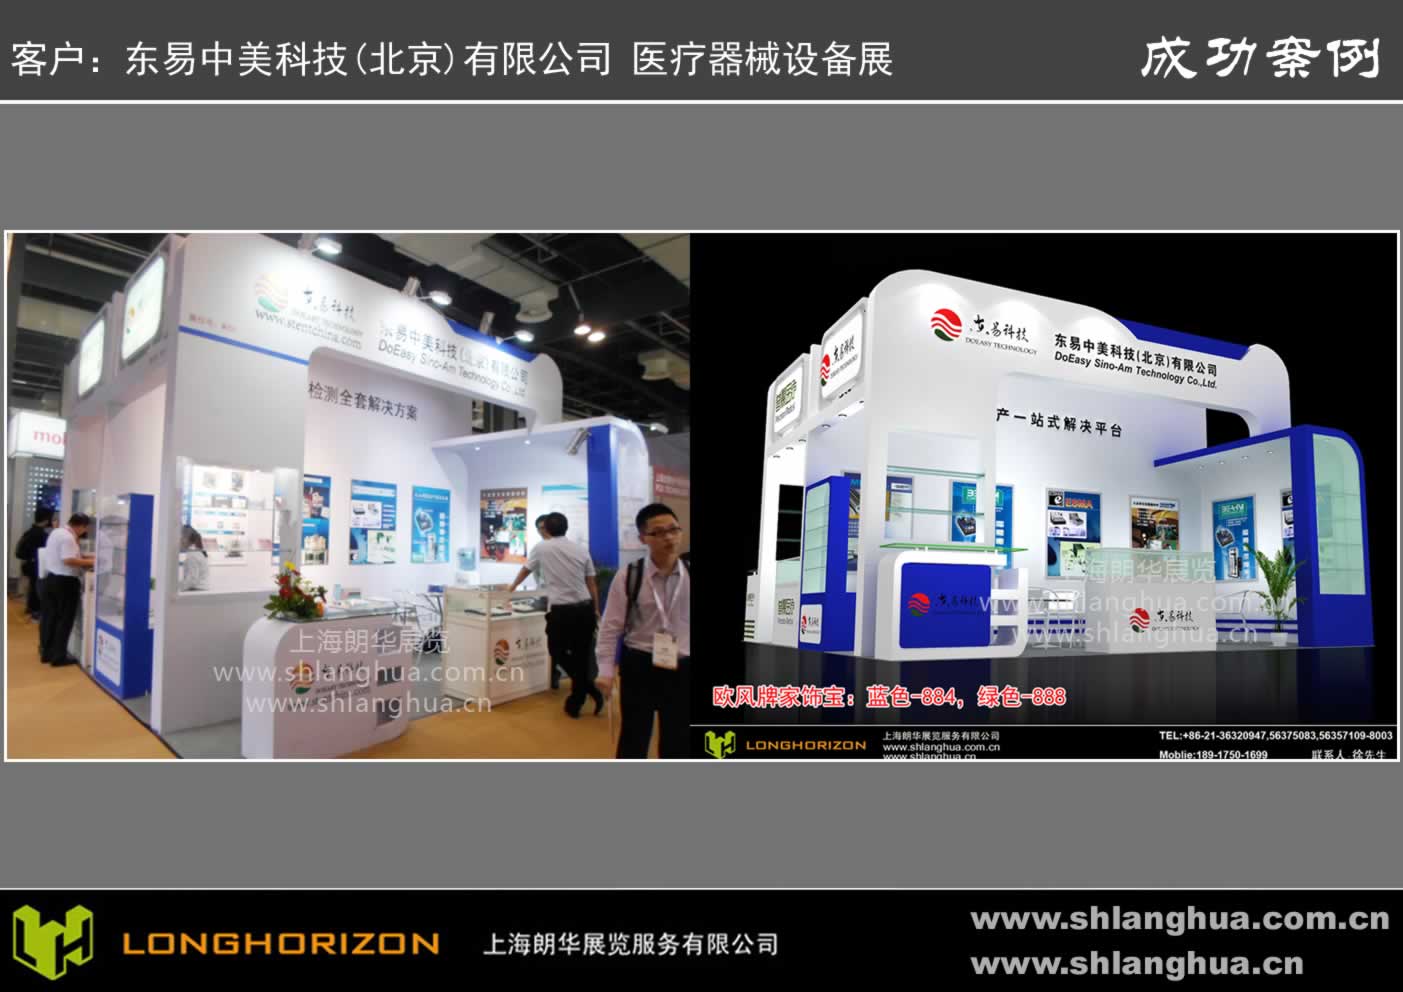 东易中美科技(北京)有限公司 医疗器械设备展